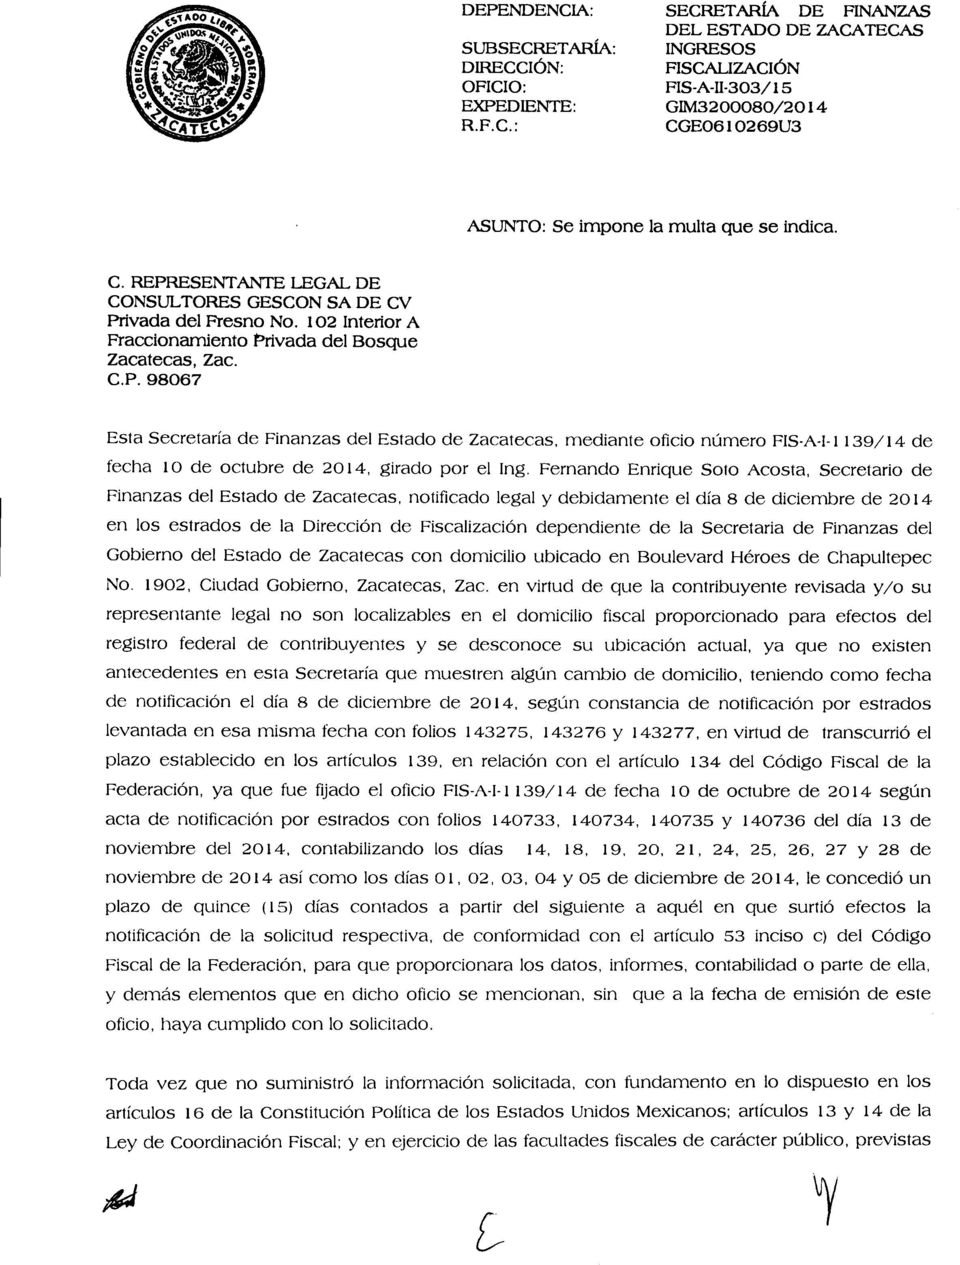 Fernando Enrique Soto Acosta, Secretario de Finanzas del Estado de Zacatecas, notificado legal y debidamente el día 8 de diciembre de 2014 en los estrados de la Dirección de Fiscalización dependiente